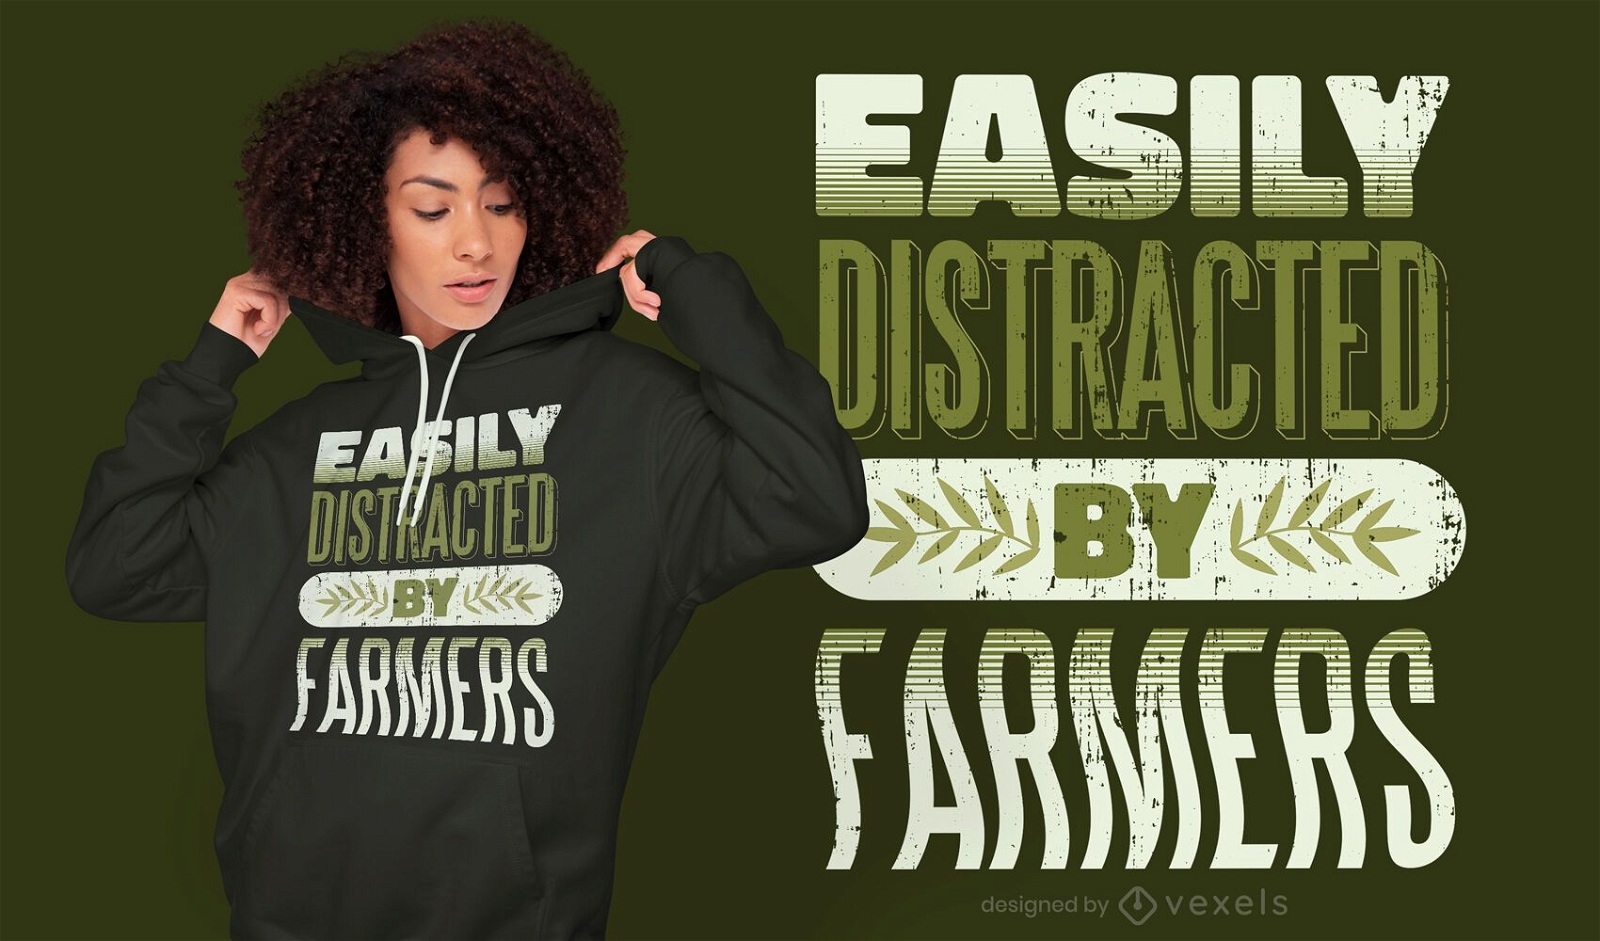 Distra?do por los agricultores cita el dise?o de la camiseta.